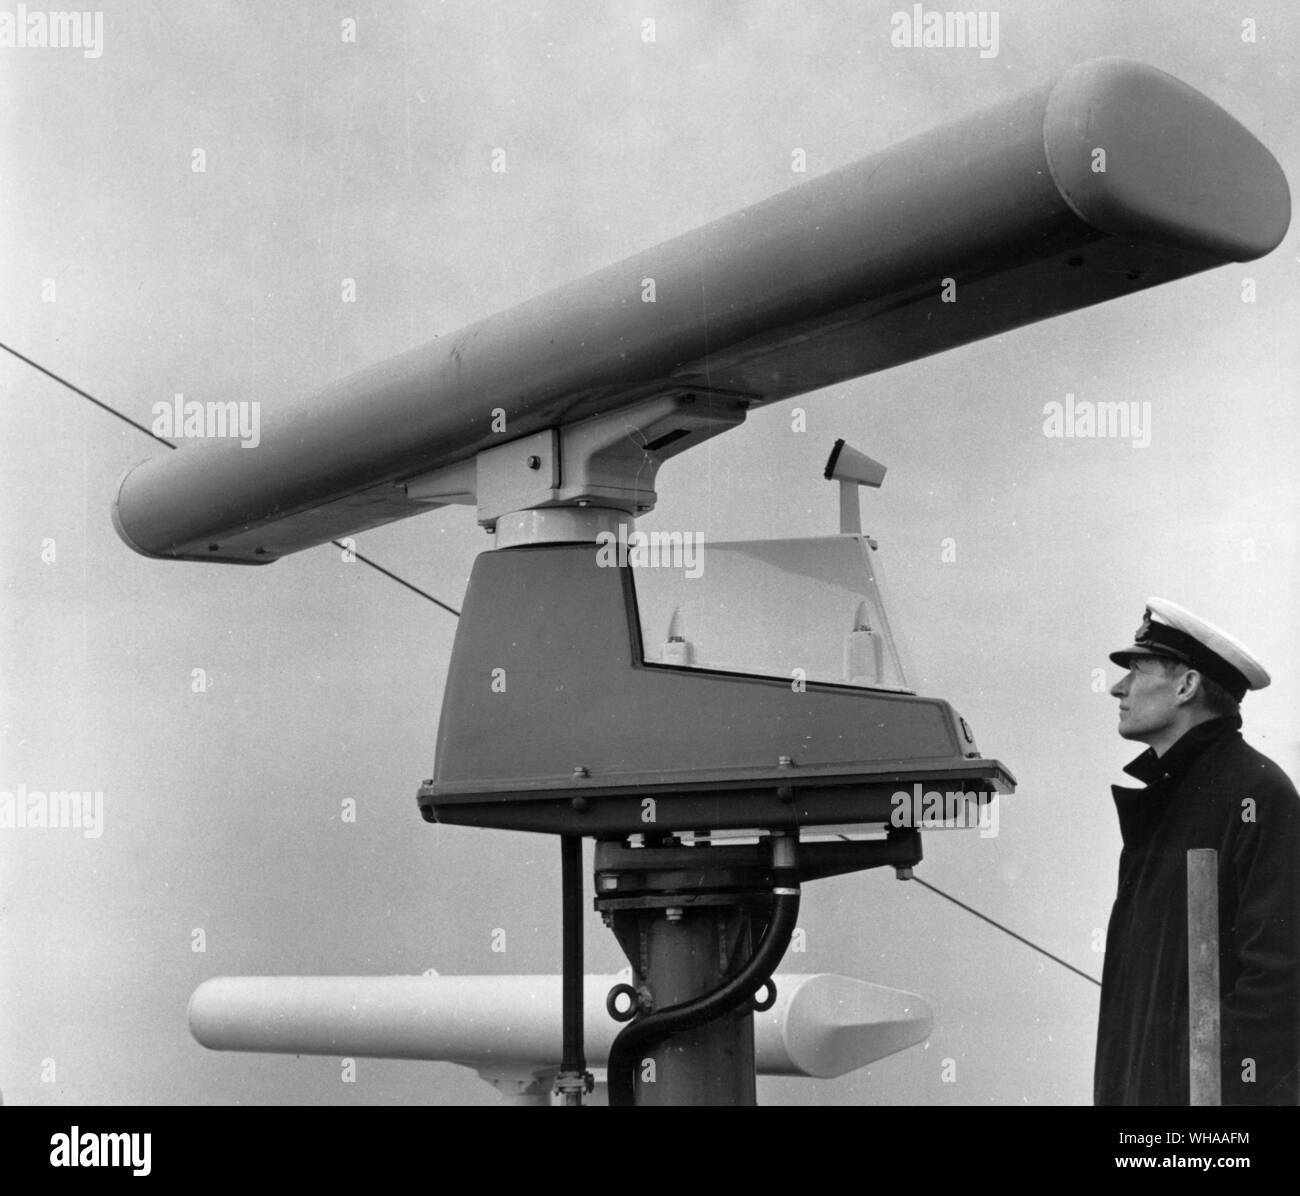 Antenne und drehen Sie dabei den Motor der Decca solid state RM 916 Radar. Im Hintergrund können die 12 ft Scanner der Decca 10 cm Radar gesehen werden. Letztere hat besondere Vorteile gegenüber der Standard 3 cm Frequenz in Bedingungen von Eis und Schnee. Stockfoto